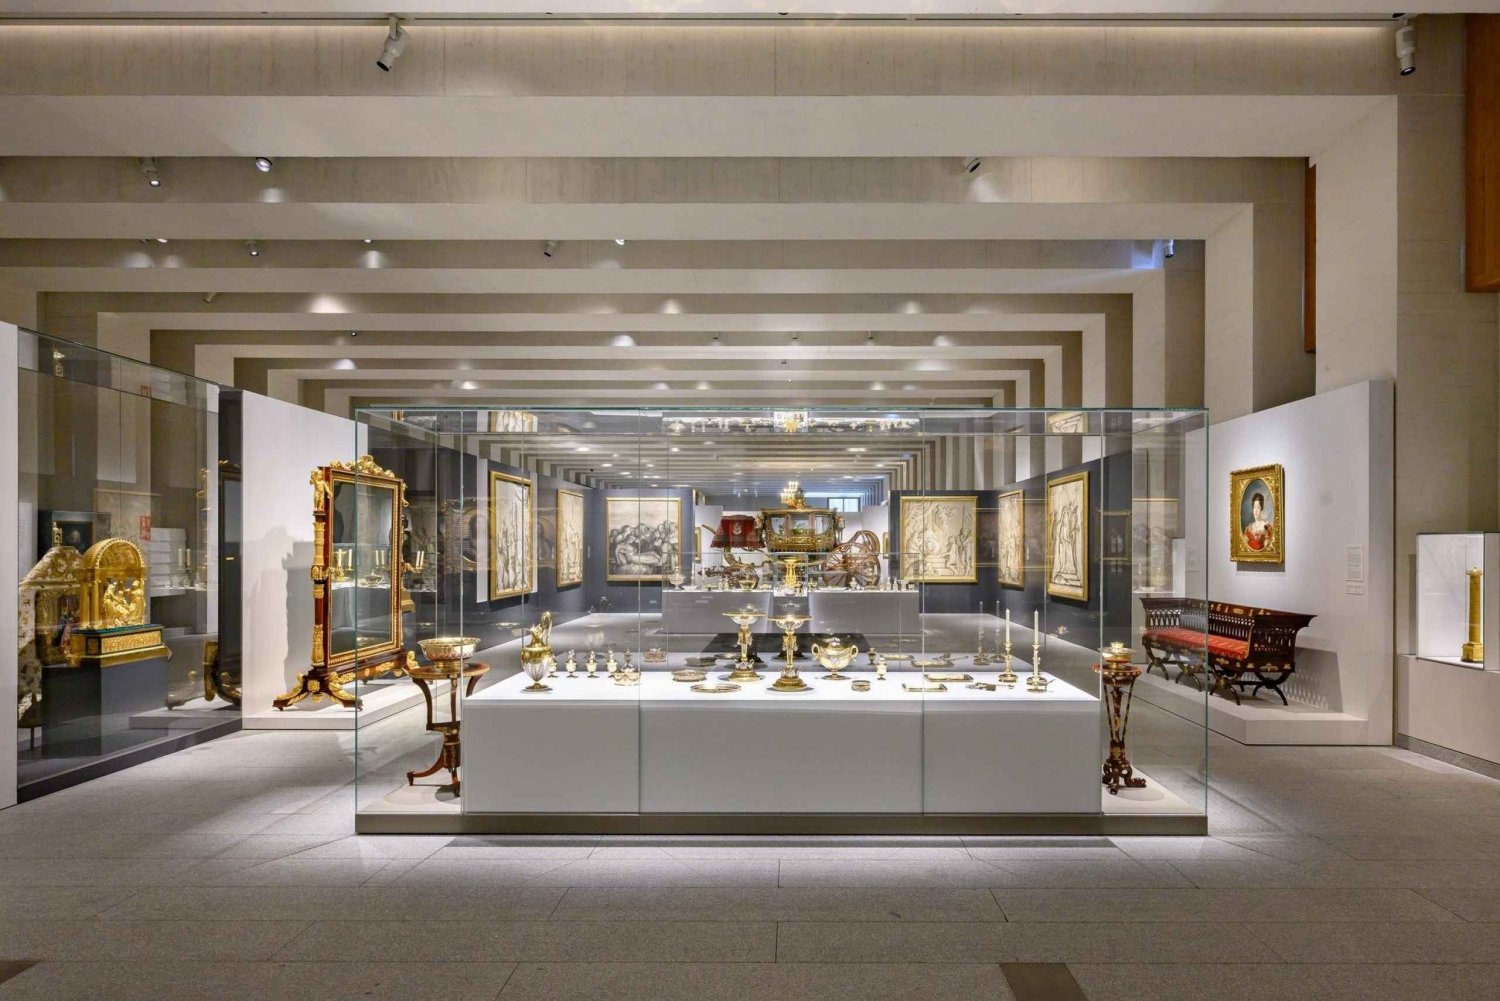 Madryt: Galeria de las Colecciones Reales i Pałac Królewski